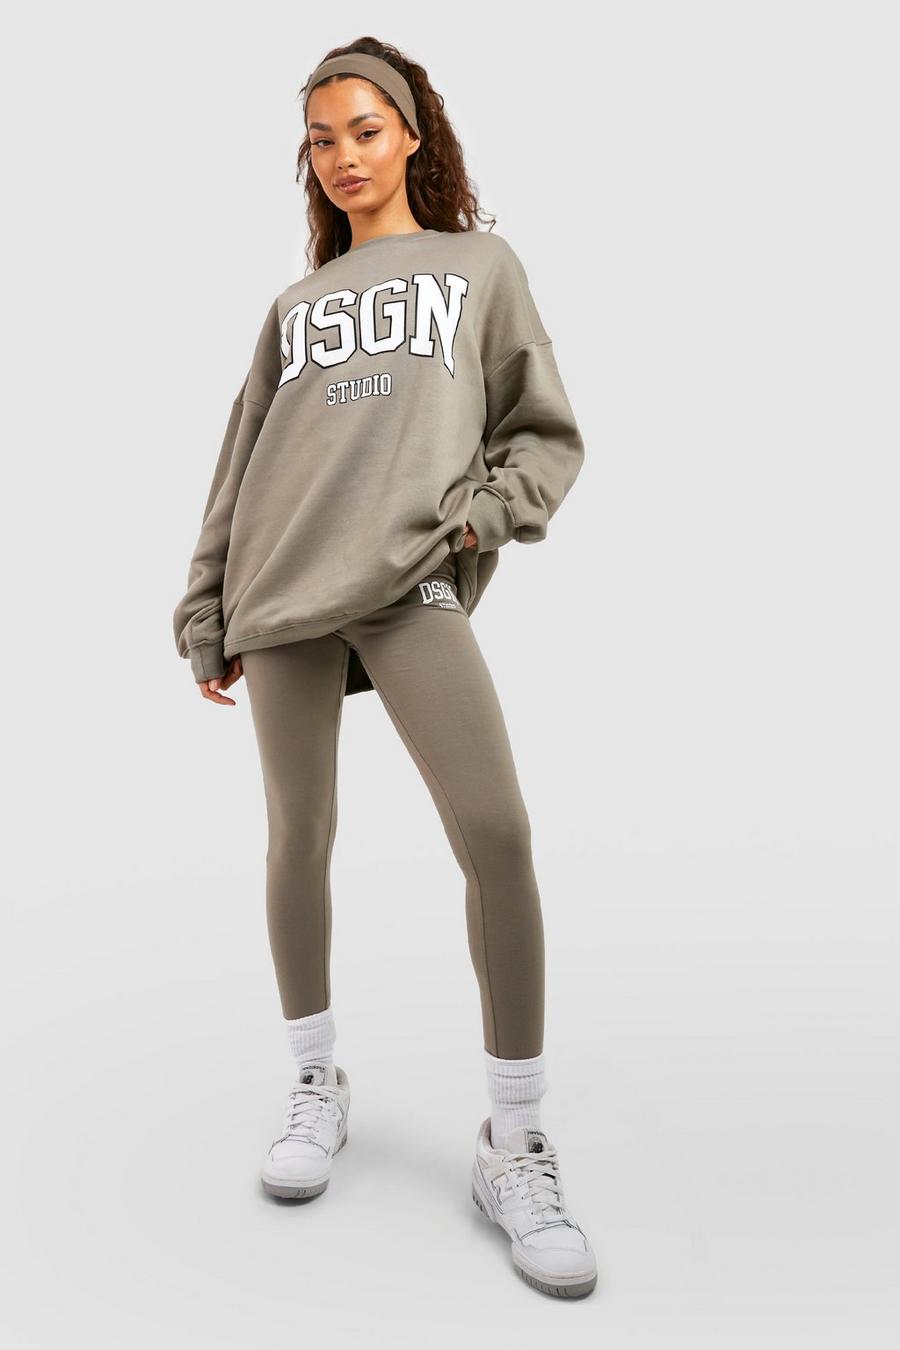 Dsgn Studio Collegiate Slogan Sweatshirt Legging Tracksuit image number 1